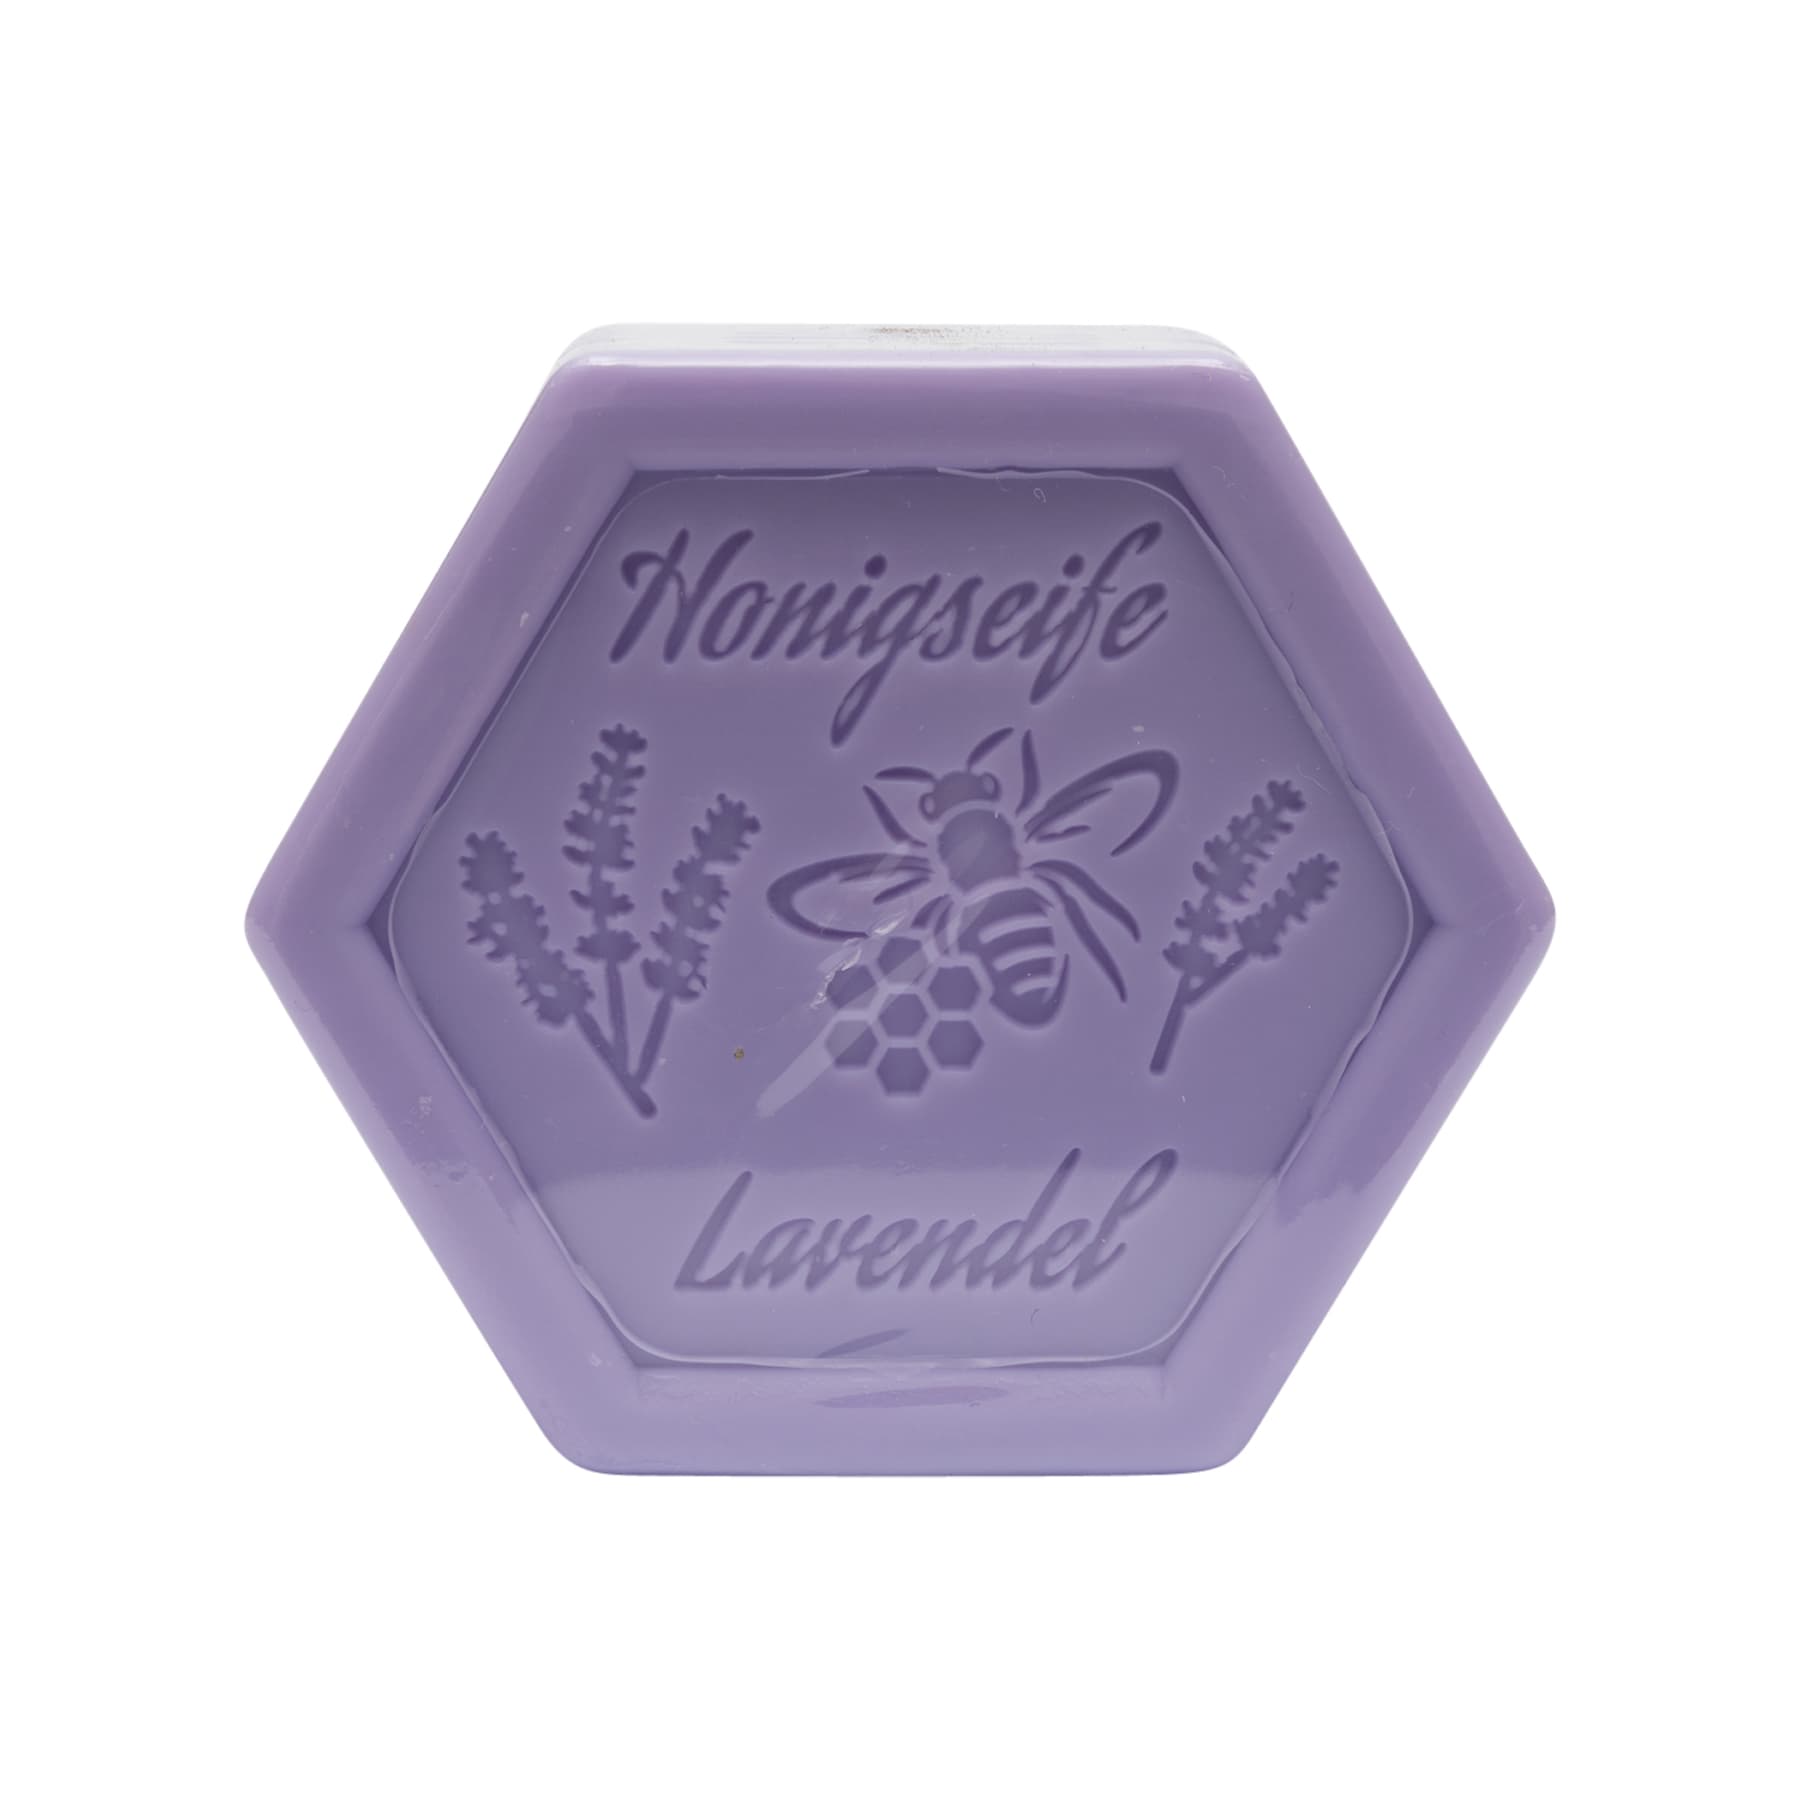 Honigseife mit Lavendel 100 g in Sechseckform, foliert und etikettiert